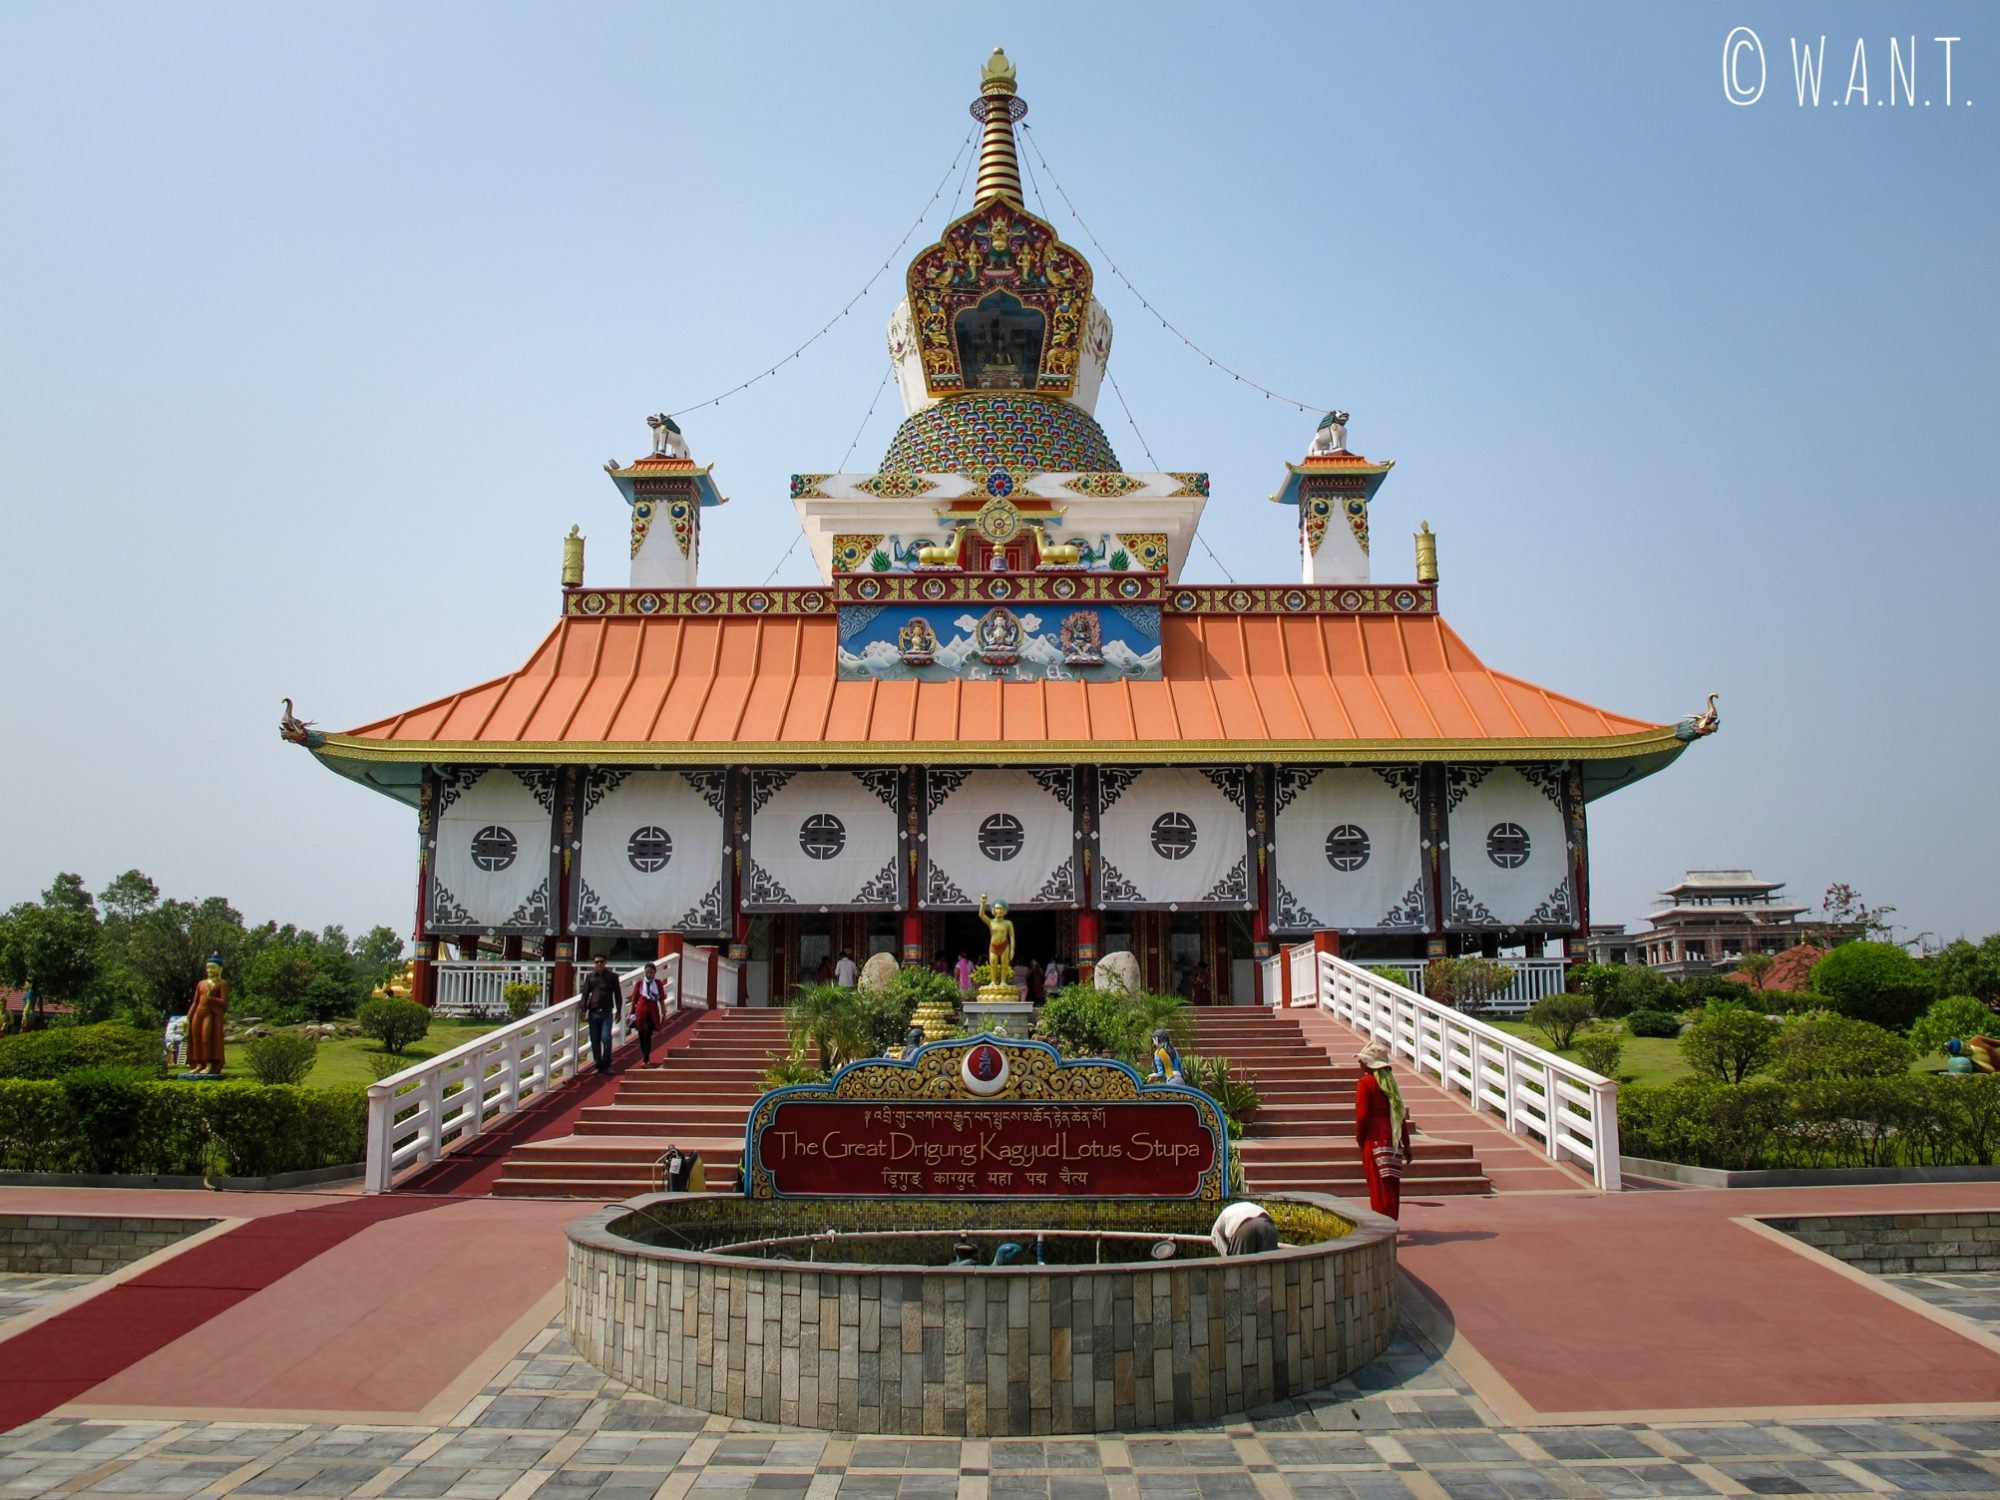 Vue depuis l'entrée du Lotus stupa construit par l'Allemagne